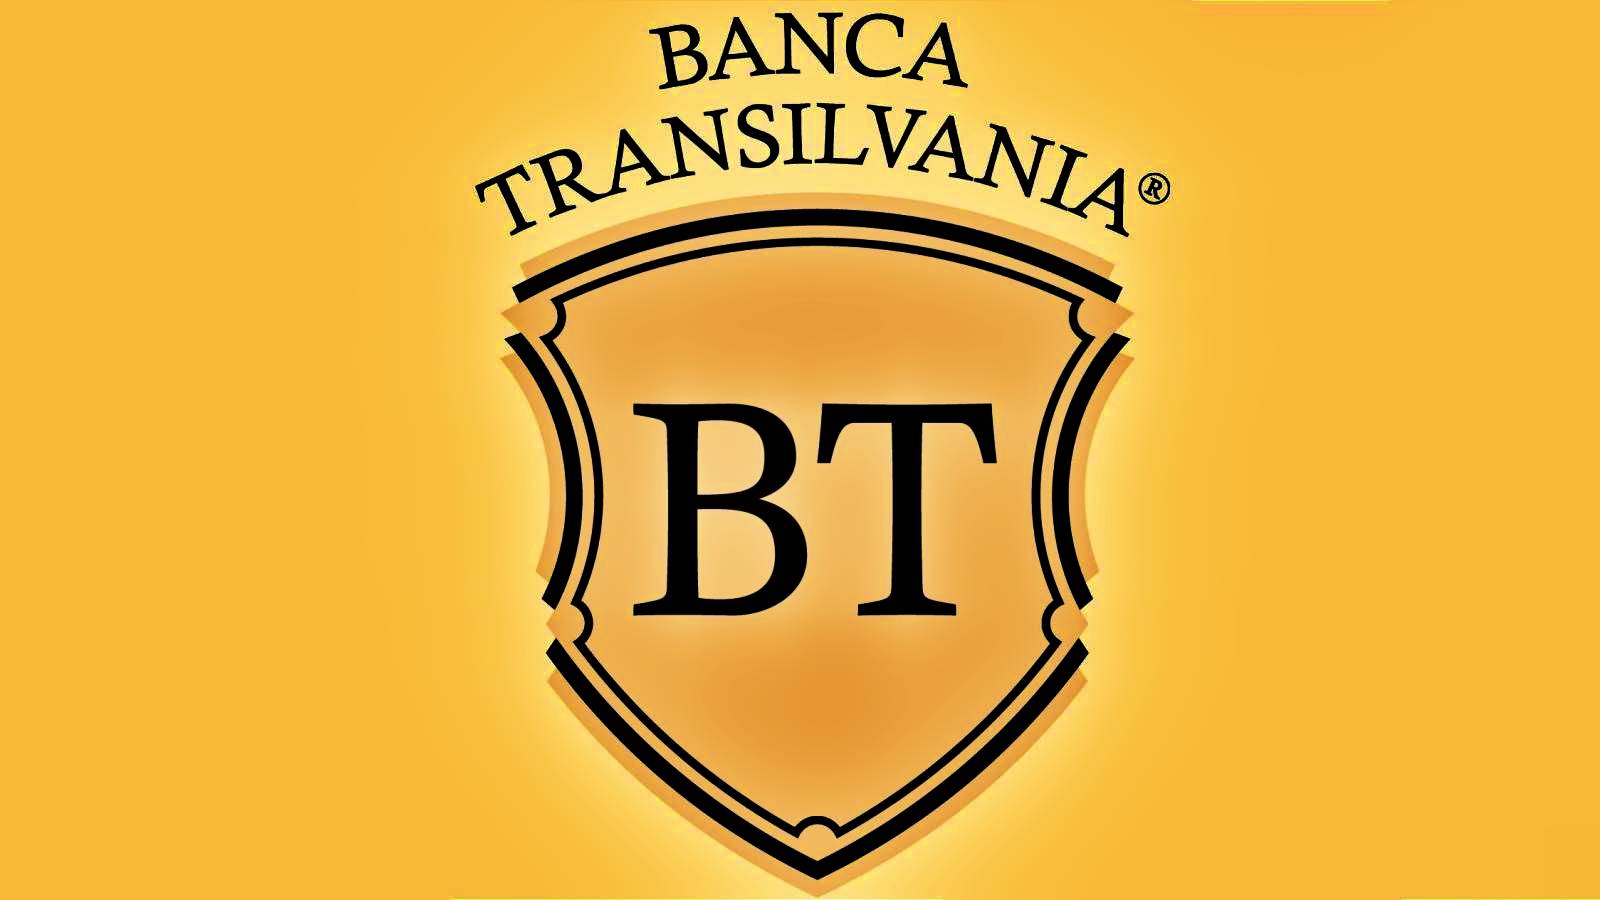 BANCA Transilvania-Kunden in Rumänien müssen VORSICHTIG sein